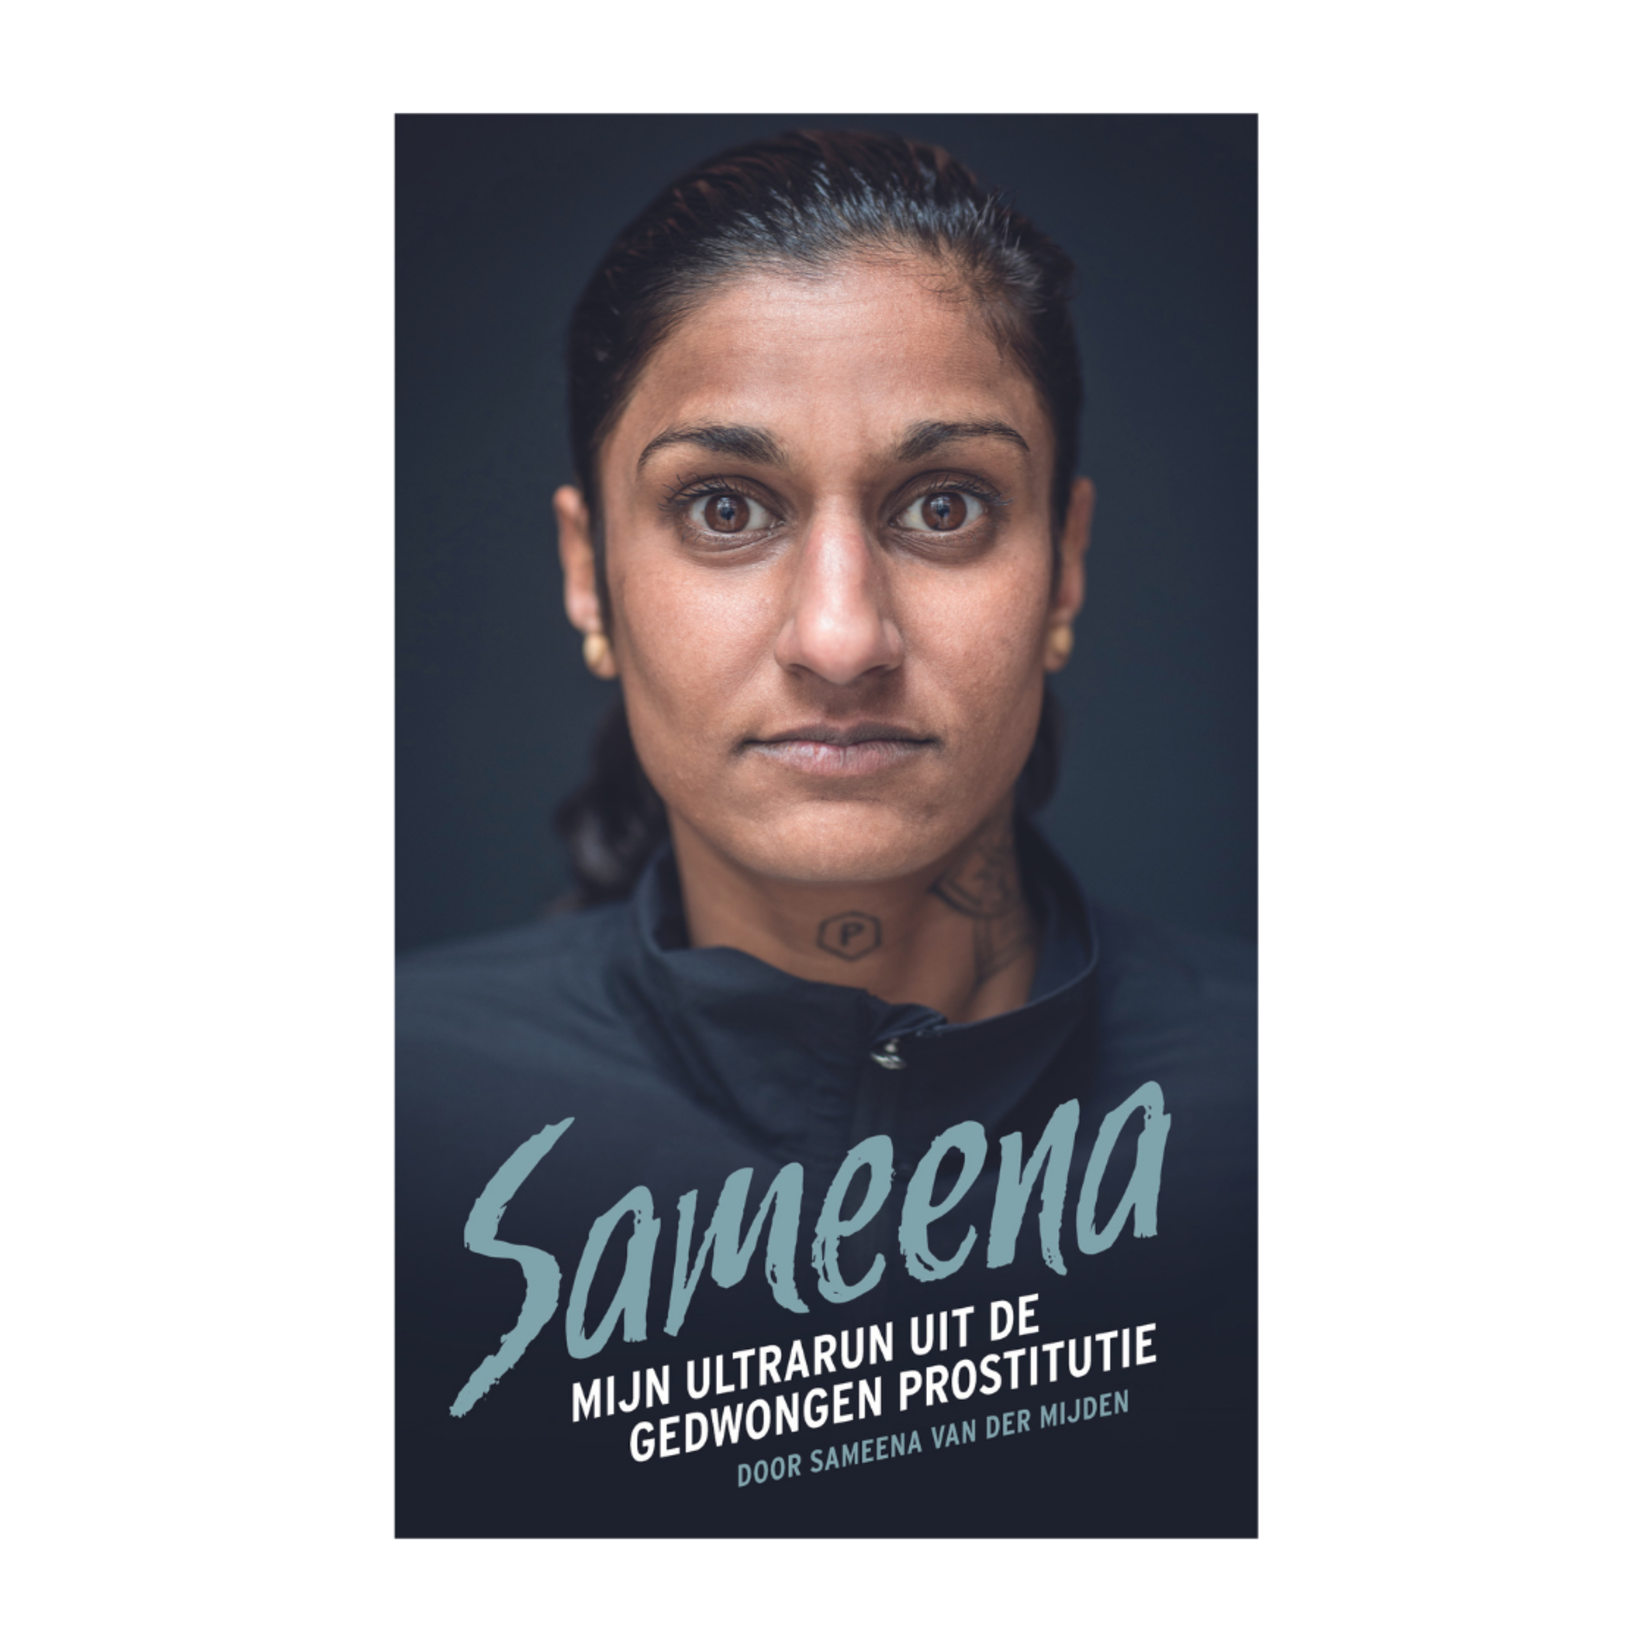 Boek Sameena; mijn ultrarun uit de gedwongen prostitutie